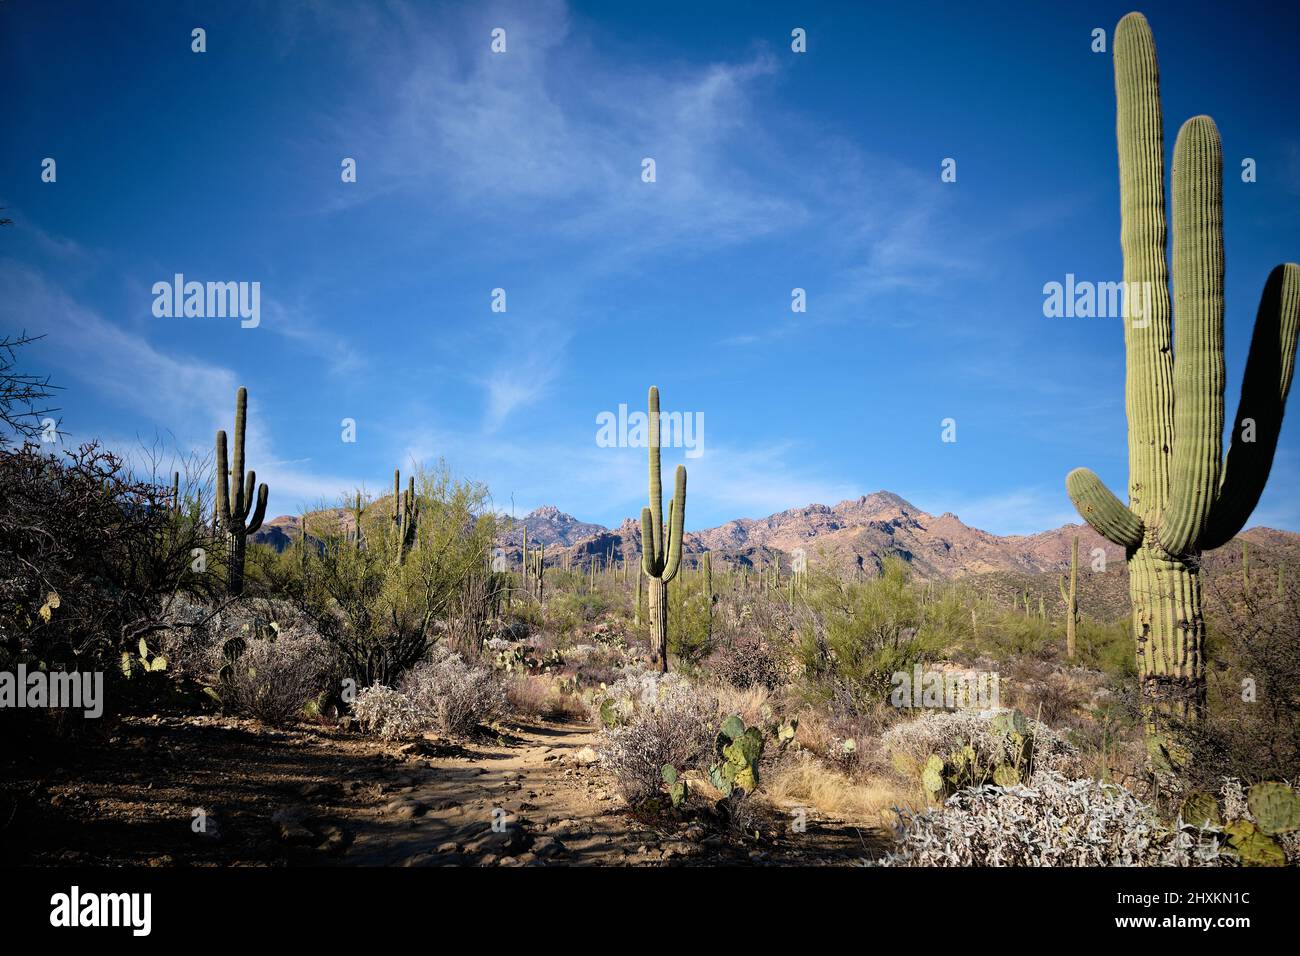 Los cactus saguaro grandes apuntan hacia arriba hacia el cielo azul y las nubes blancas y con guijarro. Icónico paisaje del desierto arizonense en el área recreativa del Cañón Sabino, cerca de Tucson Foto de stock